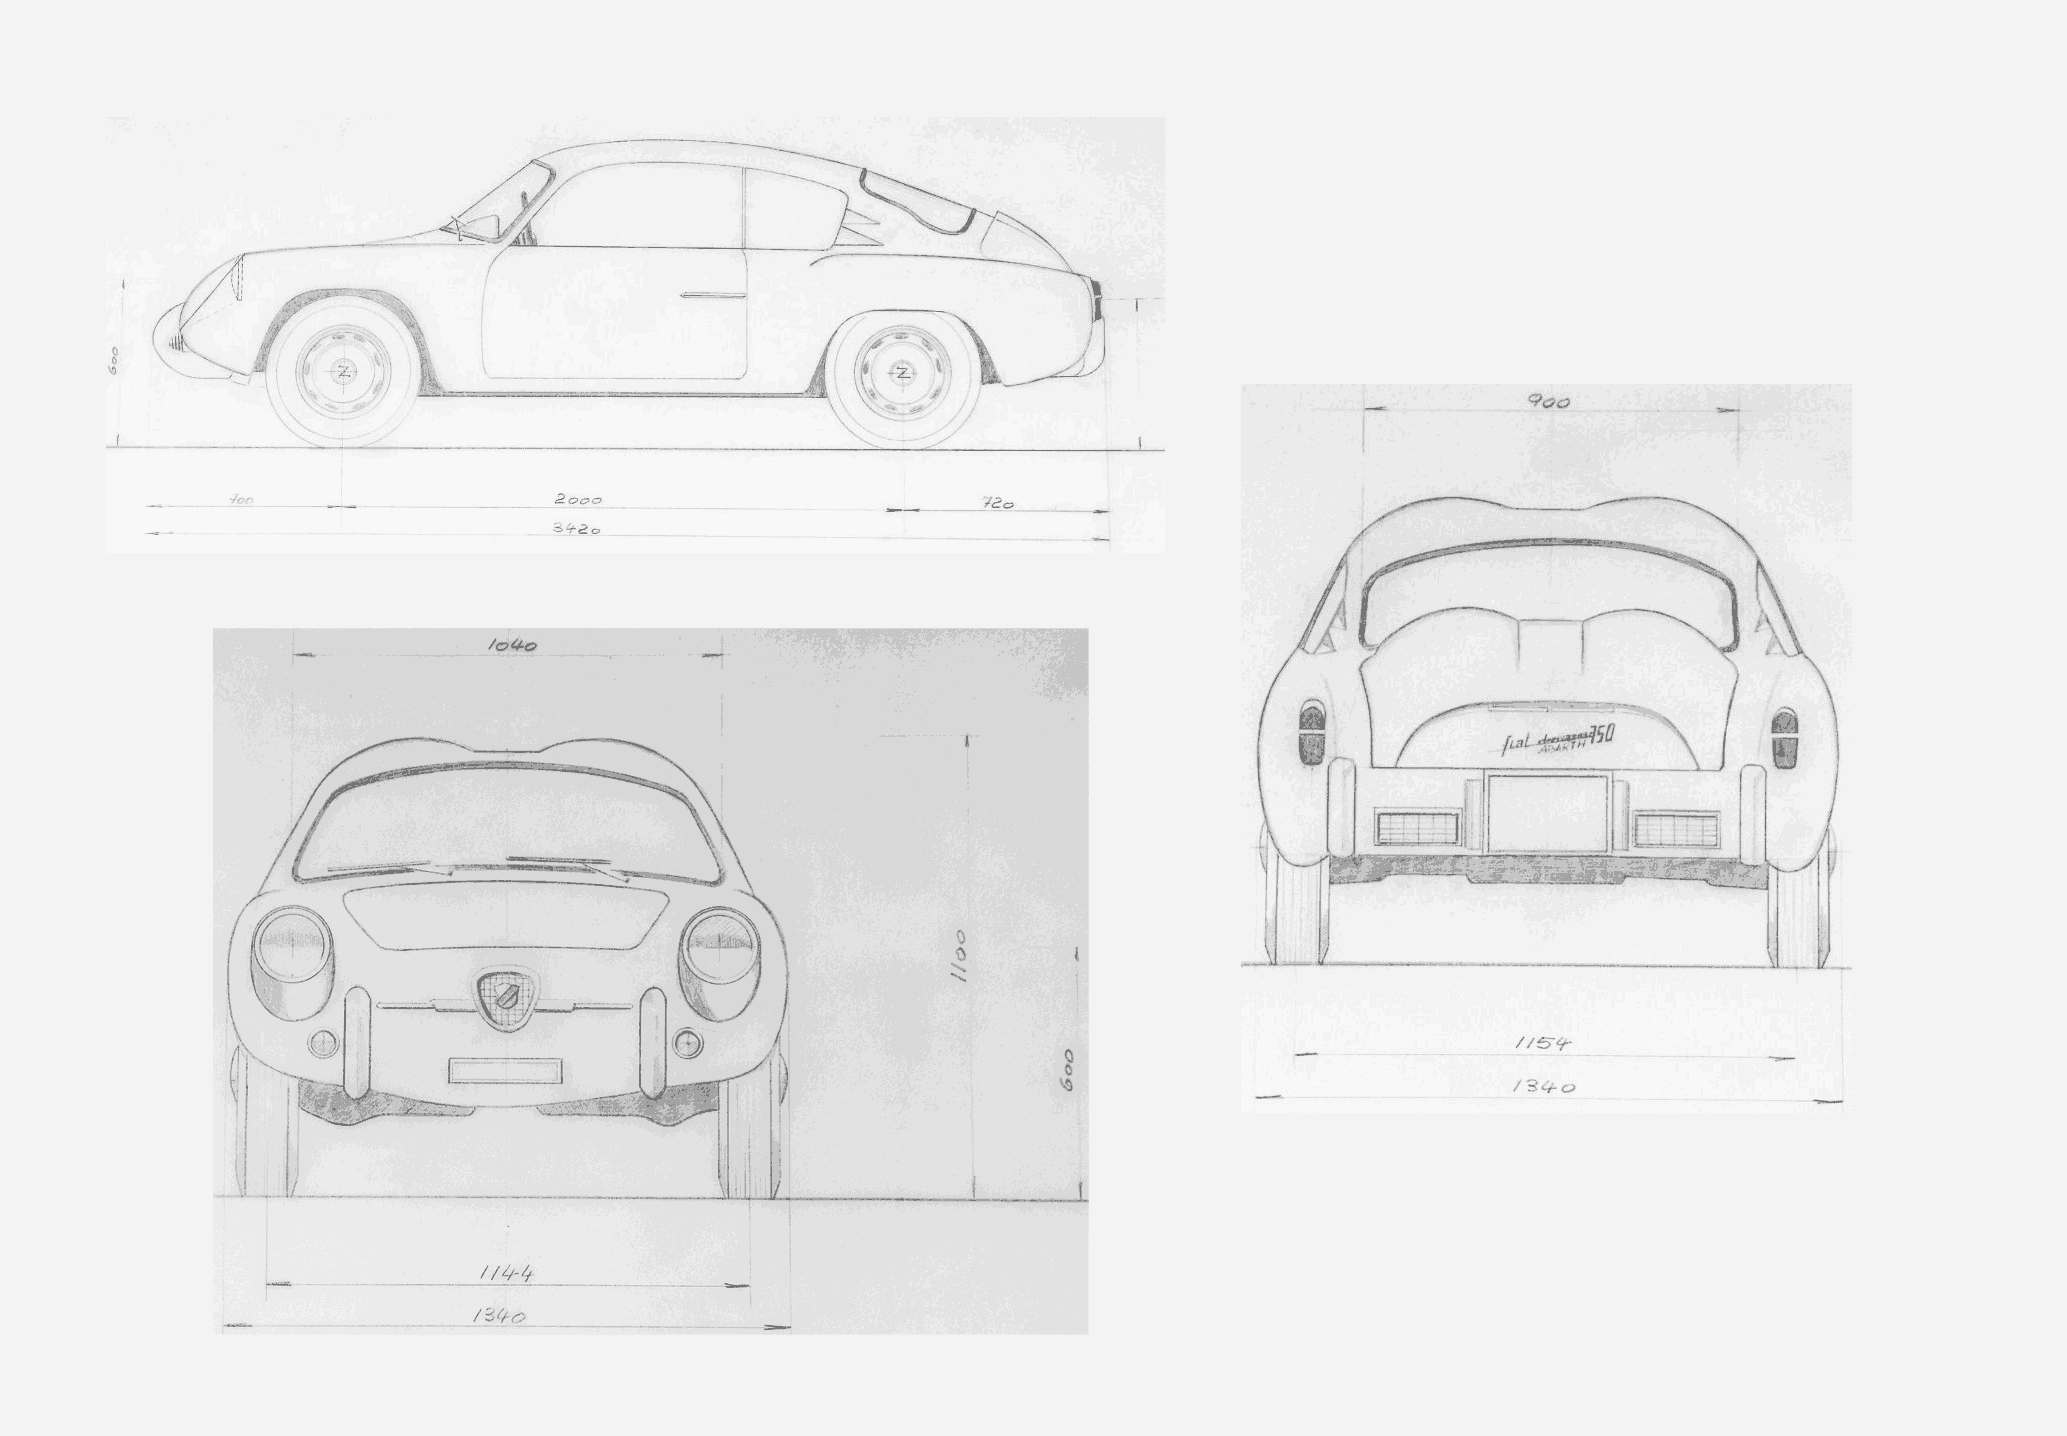 Fiat-Abarth 750 GT Double Bubble Zagato blueprint